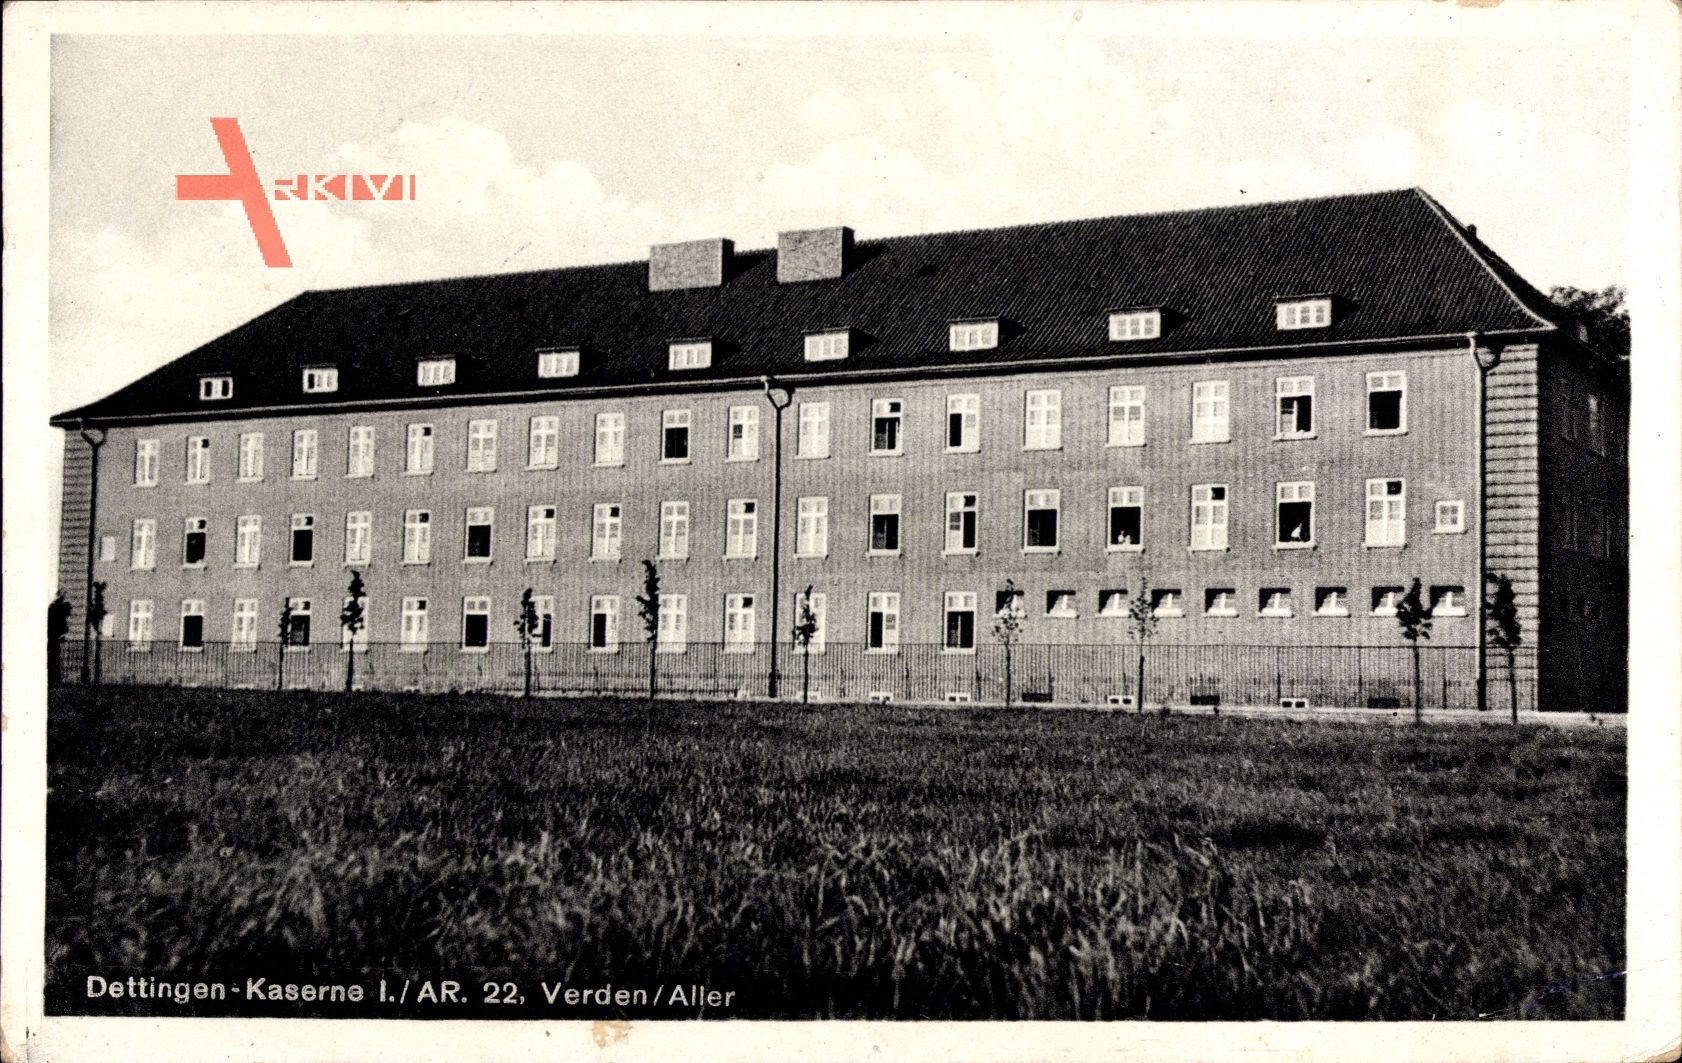 Verden an der Aller, Blick vom Feld auf die Dettingen Kaserne I. AR. 22